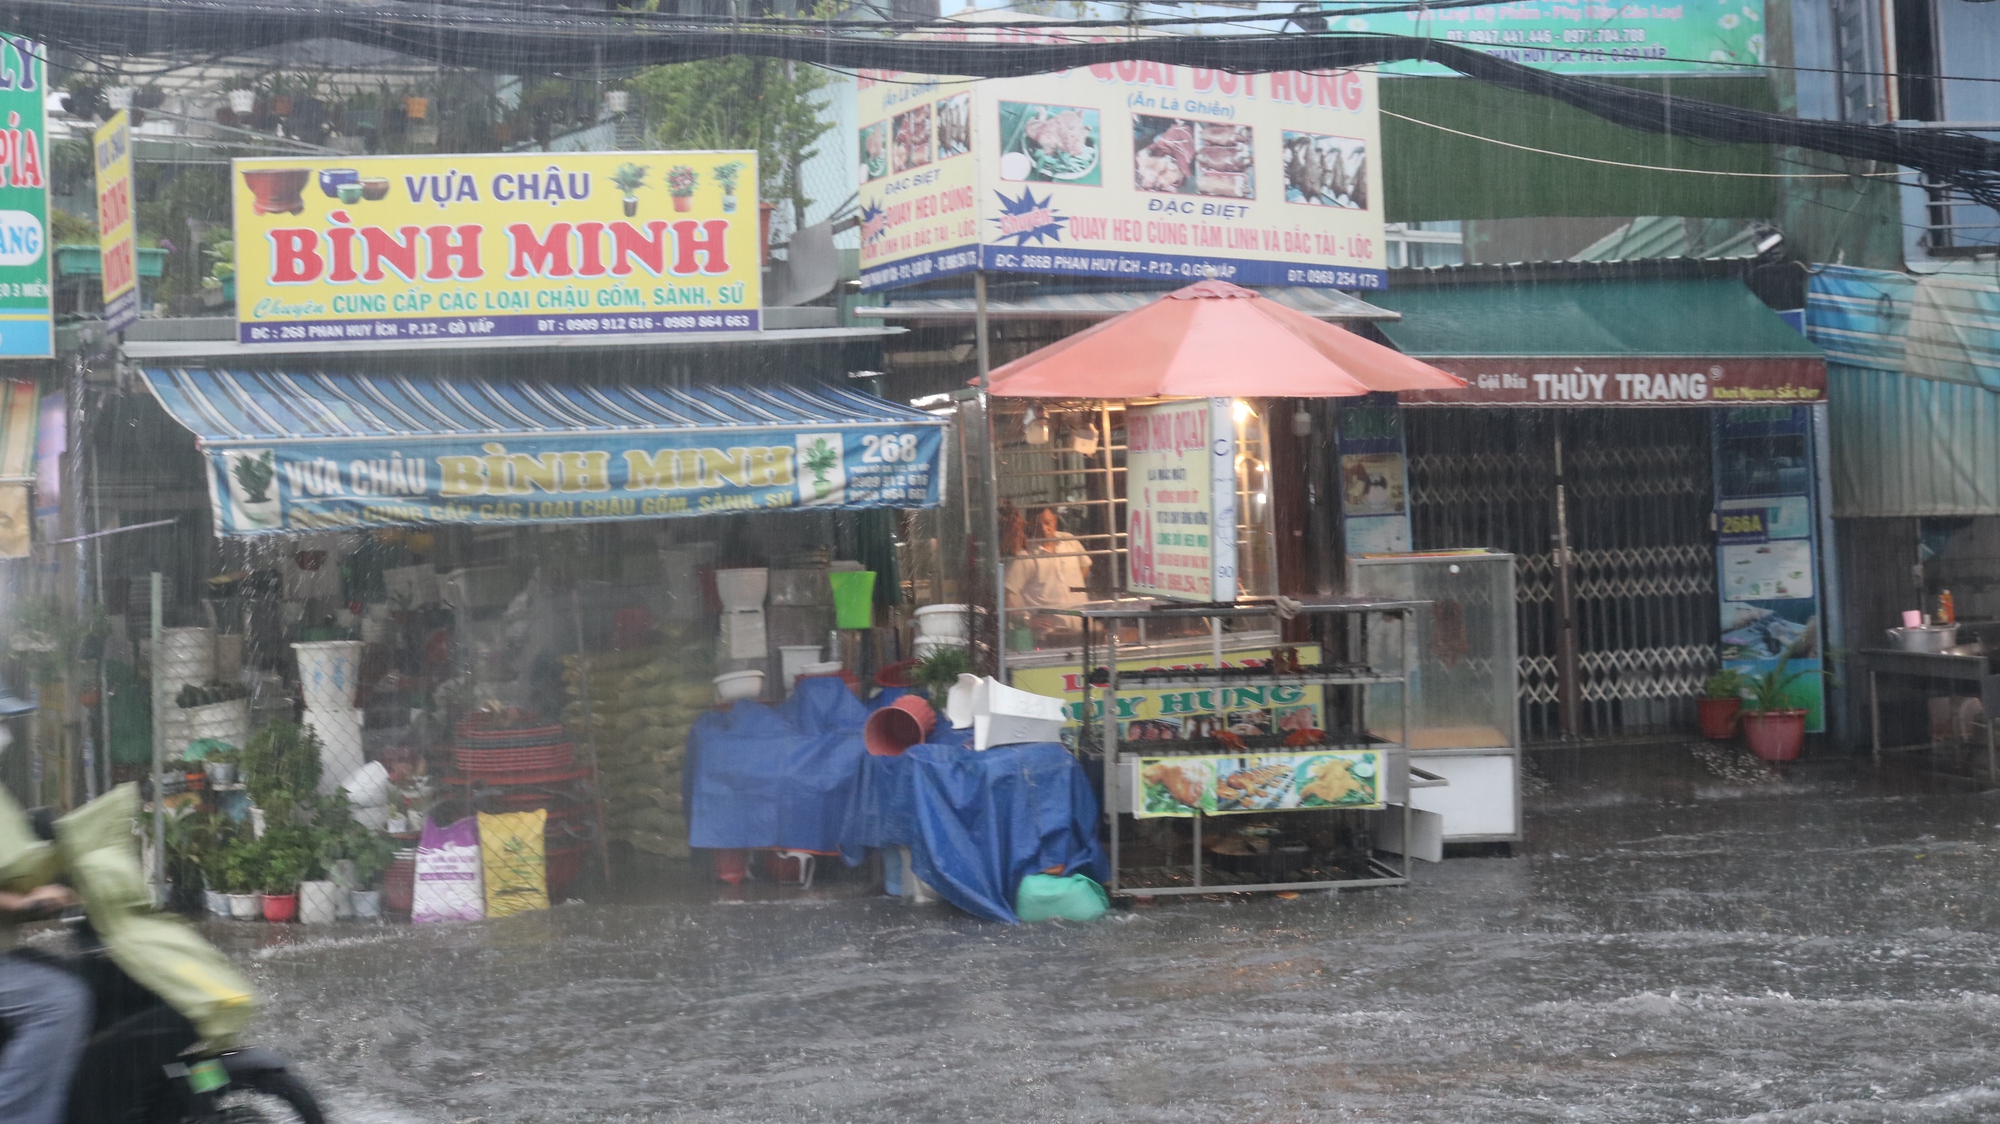 CLIP: TP HCM mưa tối trời, người dân xé nước trên đường - Ảnh 5.